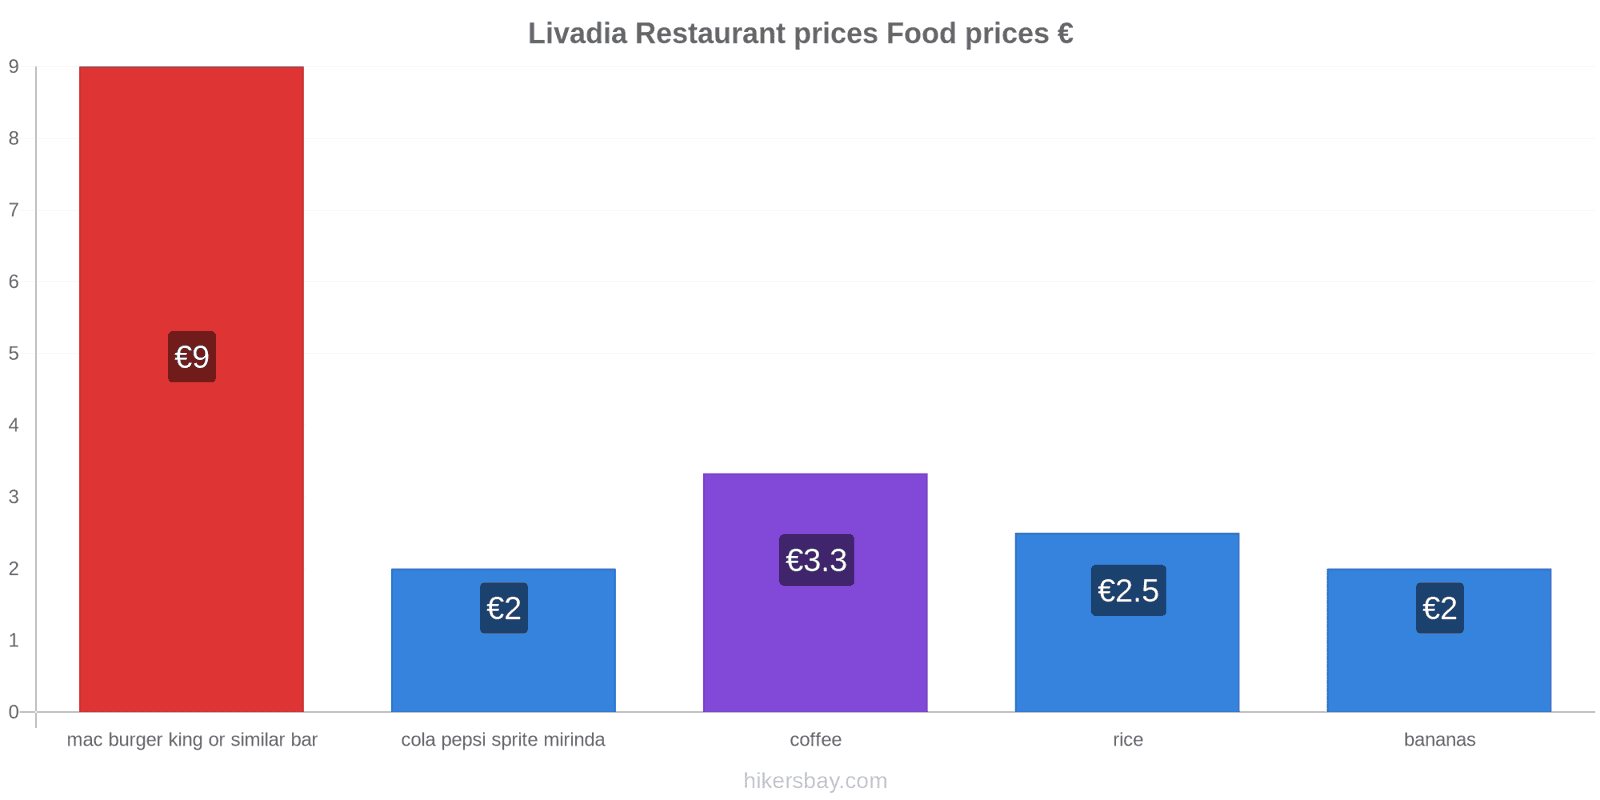 Livadia price changes hikersbay.com